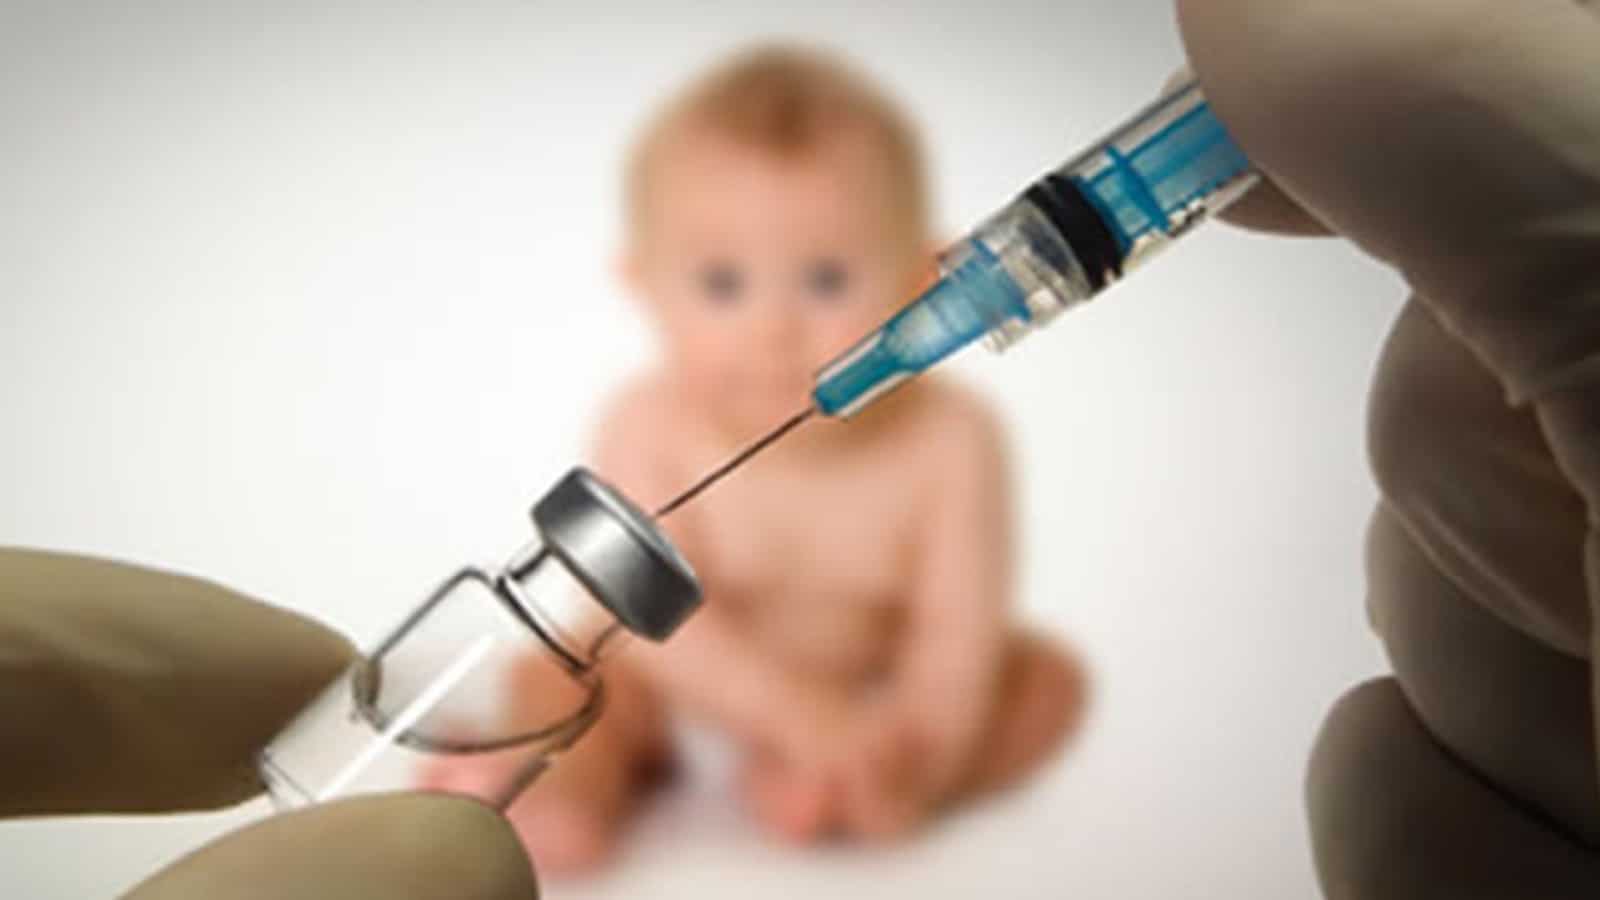 วัคซีนไวรัสตับอักเสบบี ประเภทของวัคซีน วิธีรับวัคซีน อาการข้างเคียง